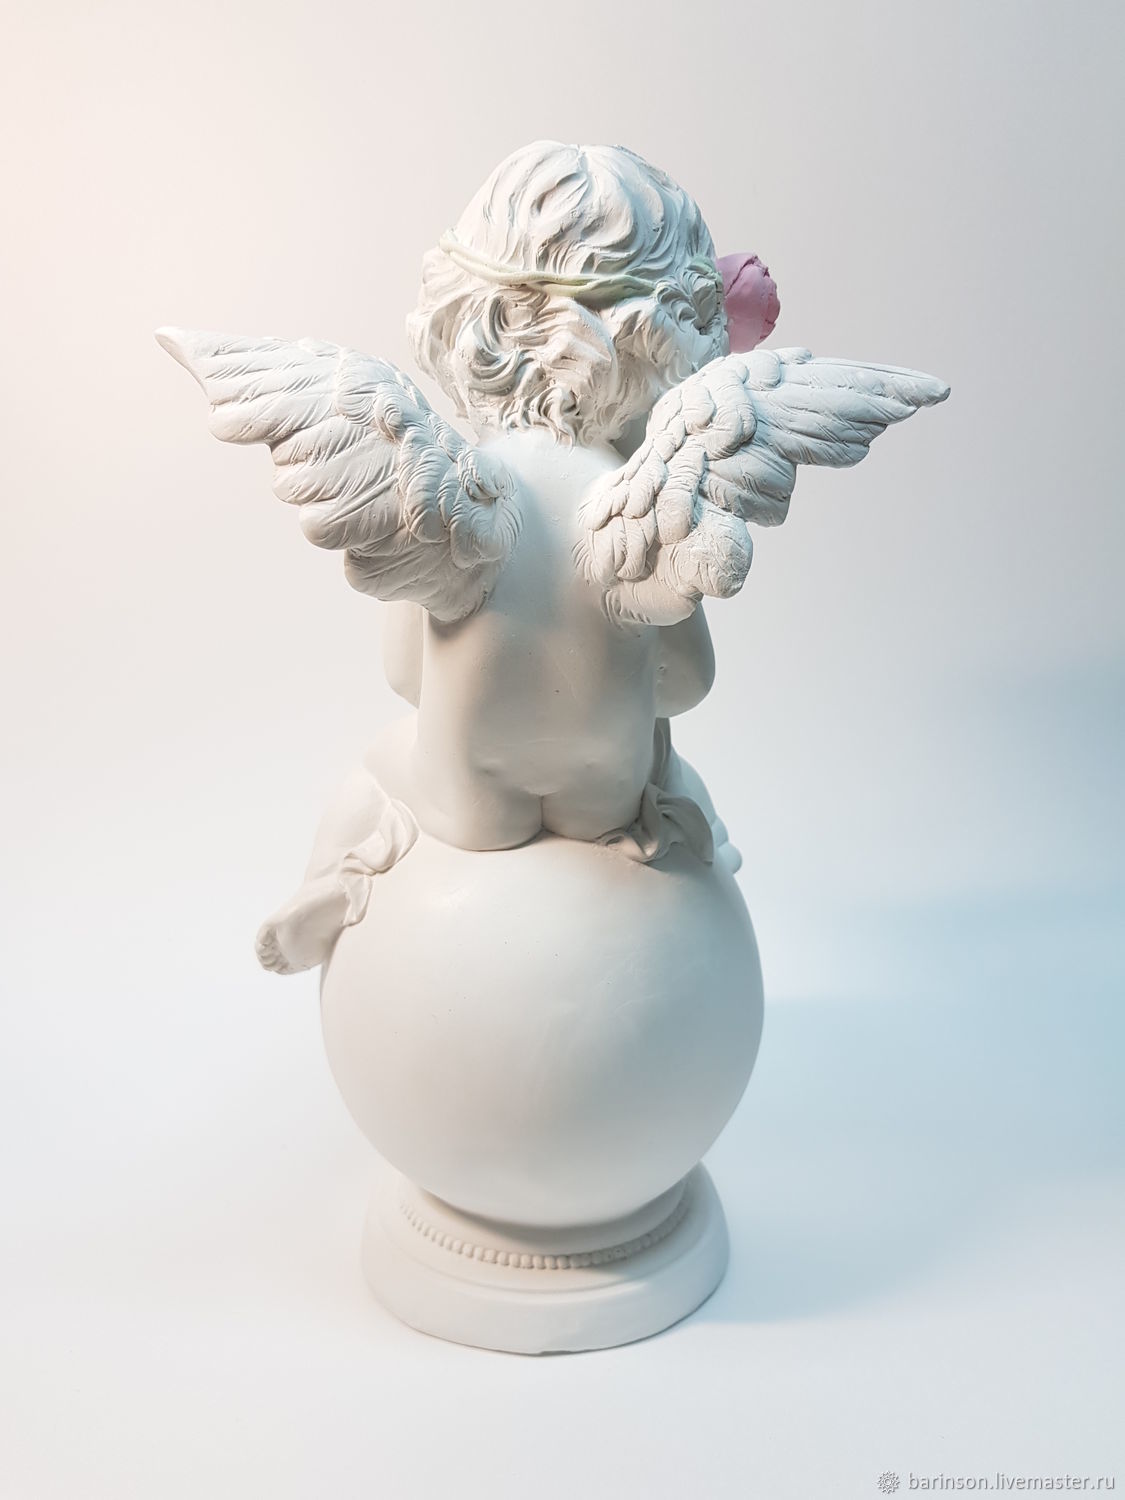 Необычный образ ангела, легко парящего на шаре, заставляет задуматься о вечности и мистическом